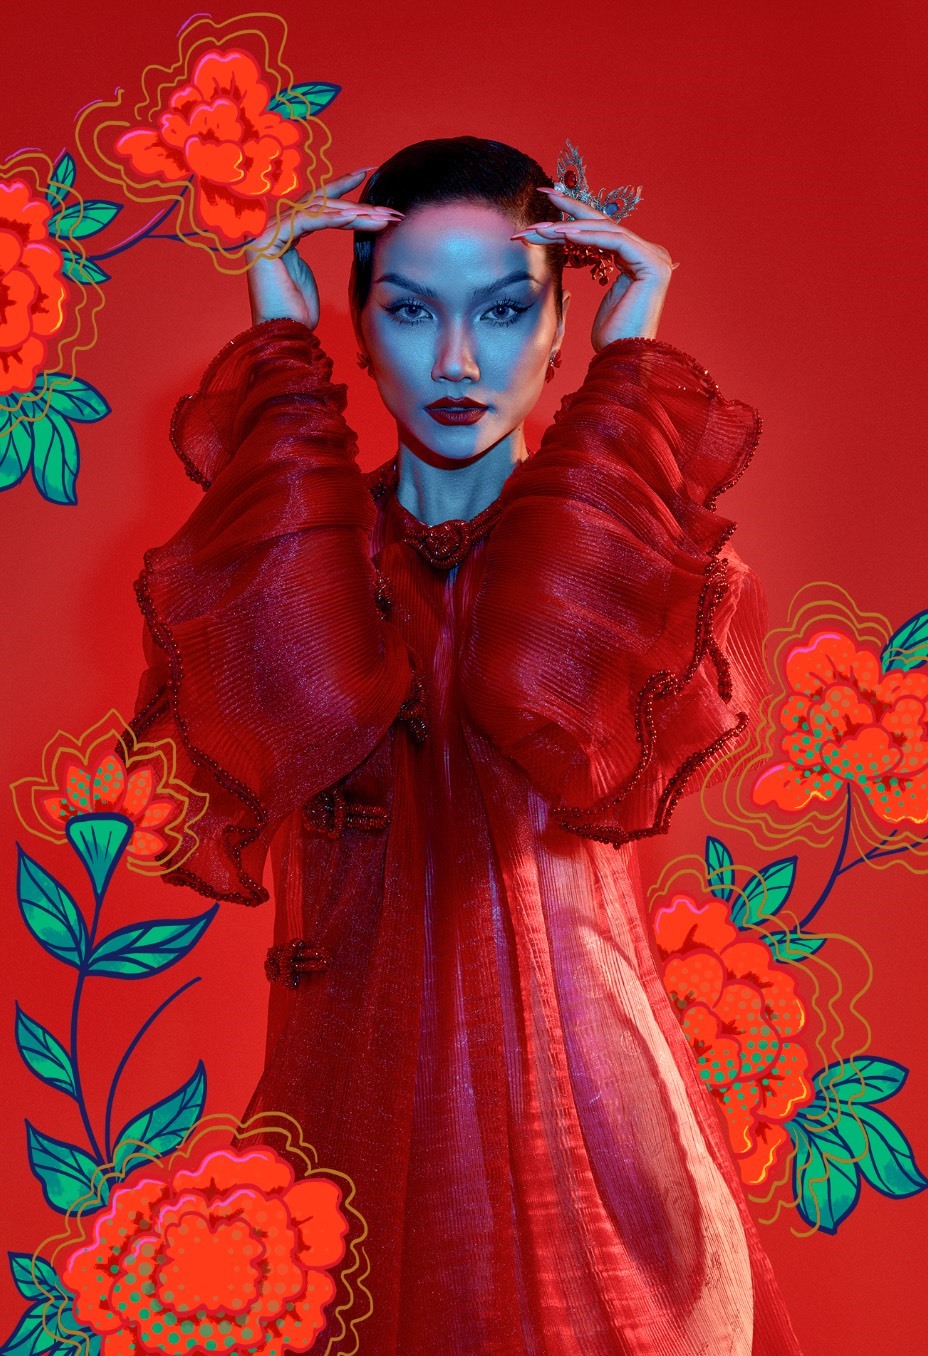 Thông qua bộ ảnh, Hoa hậu H’Hen Niê chú trọng vào cách tạo dáng, biểu cảm để thể hiện thông điệp về tự hào văn hoá dân tộc.